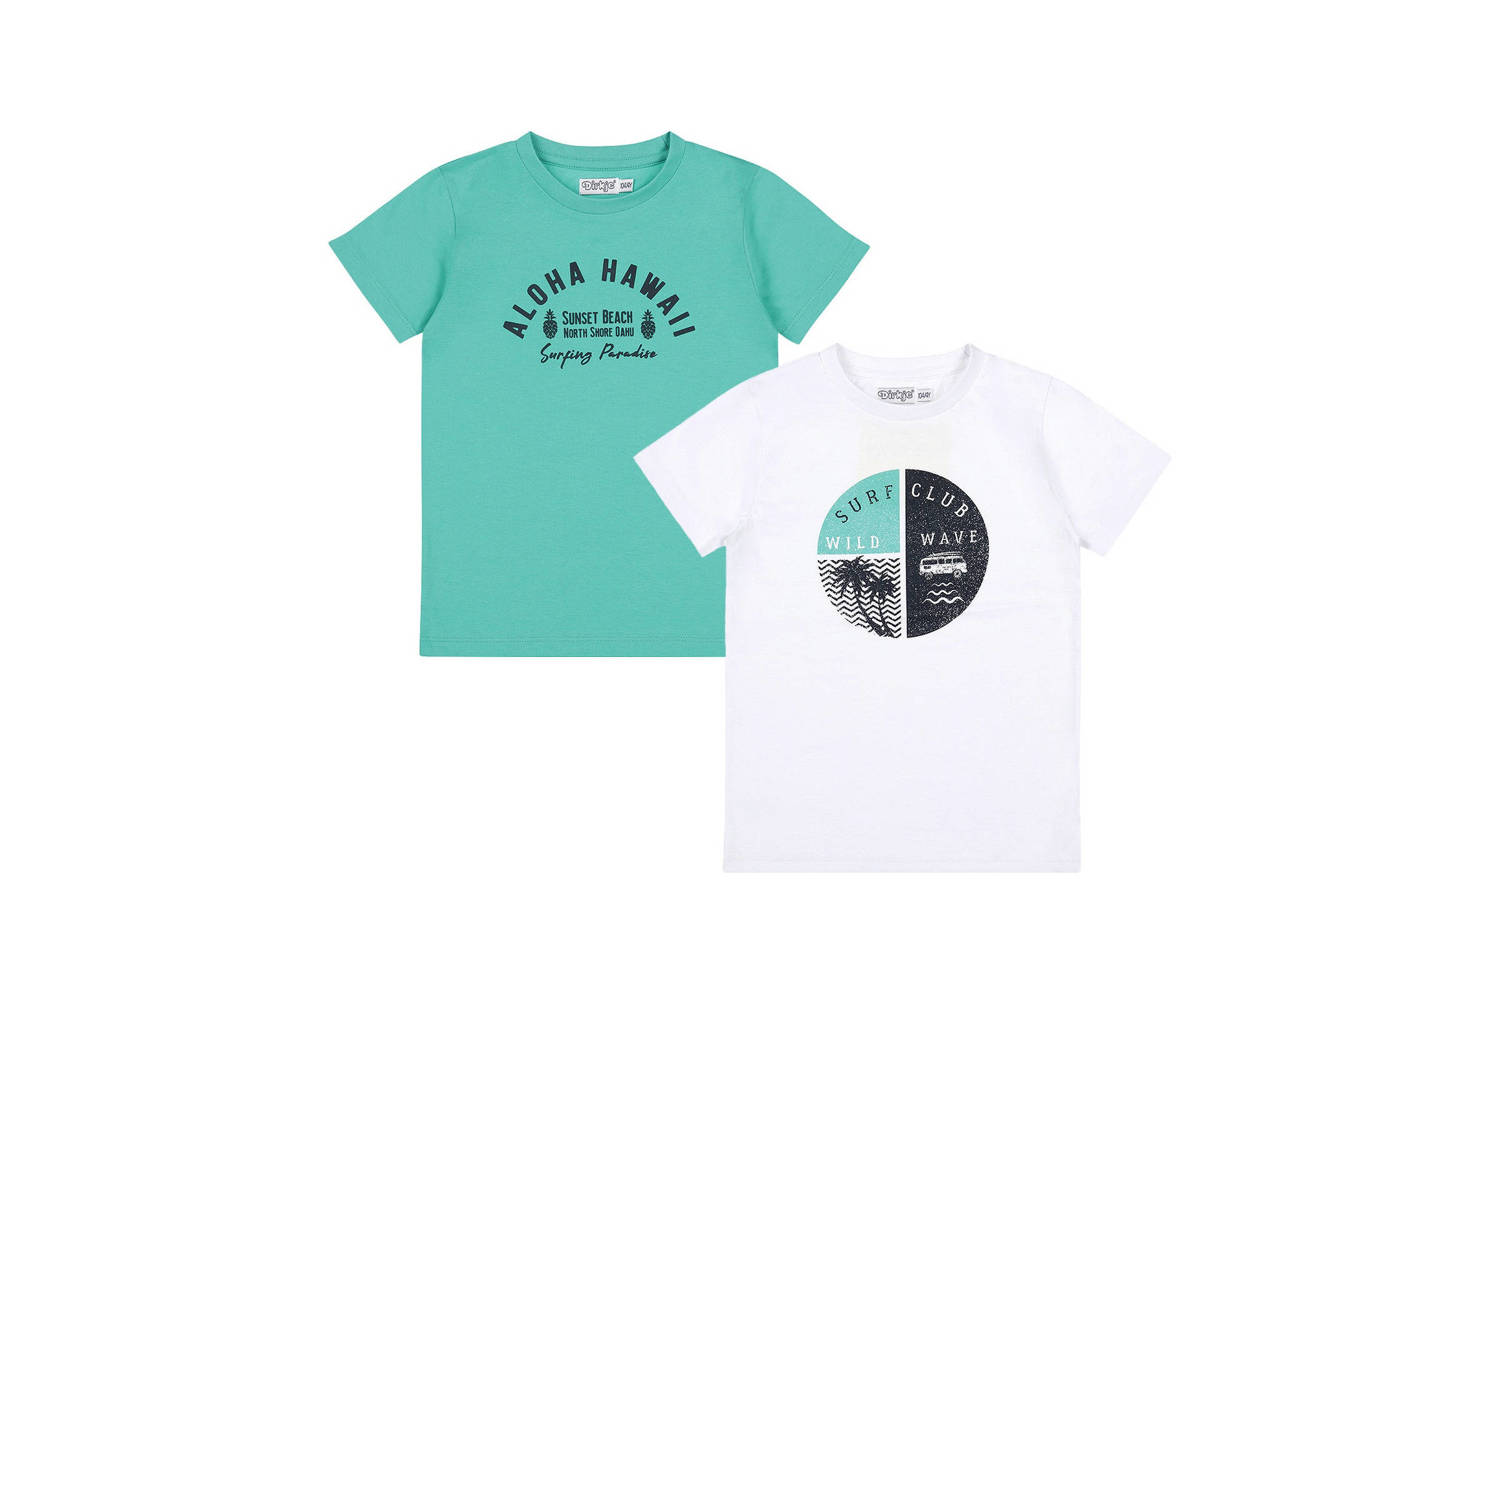 Dirkje T-shirt set van 2 groen wit Jongens Katoen Ronde hals Printopdruk 116